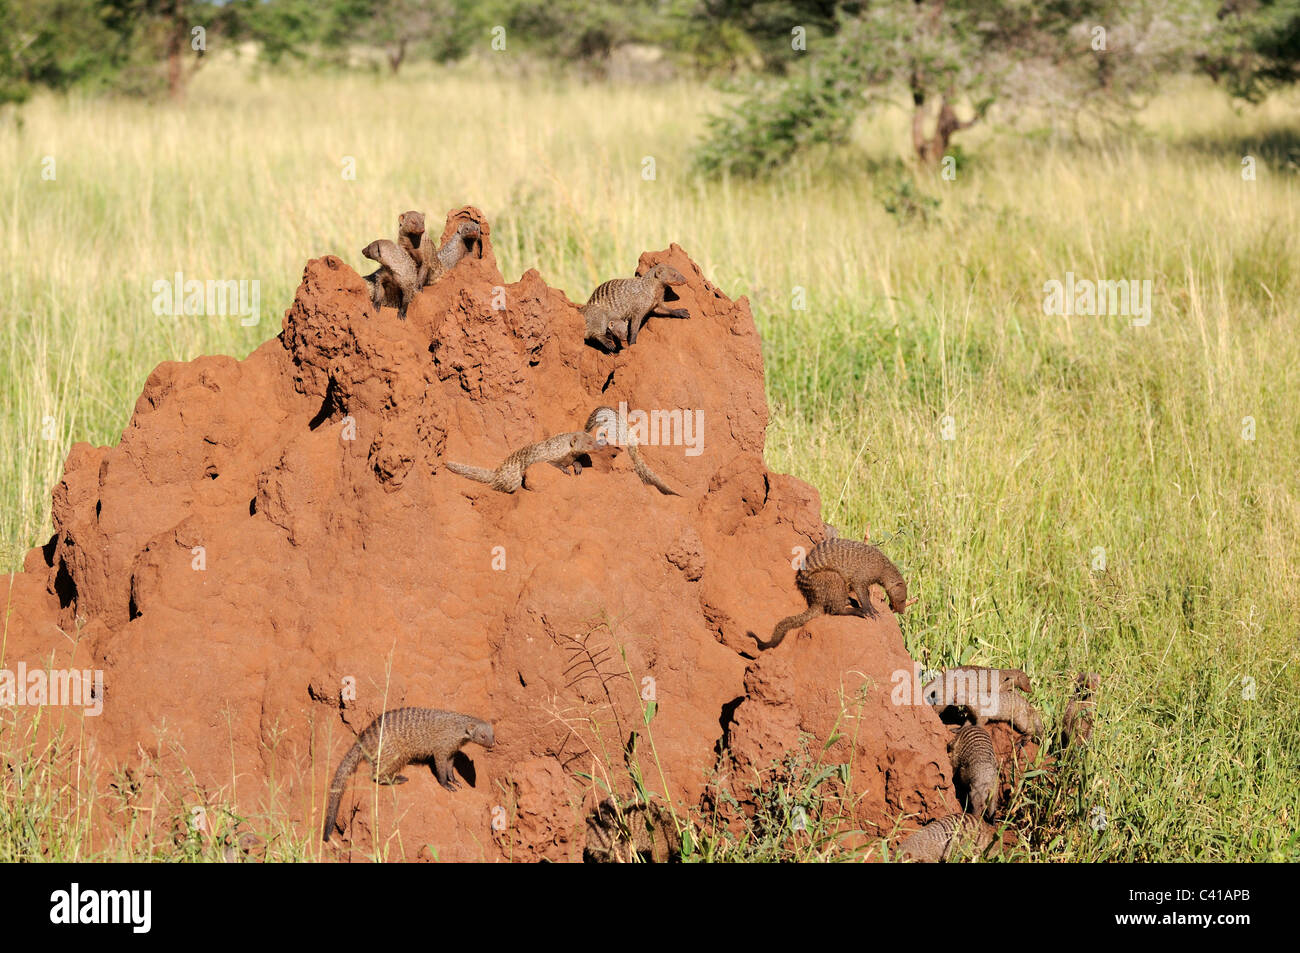 Les mangoustes bagués sur une termitière dans Parc national de Tarangire, Tanzanie Banque D'Images